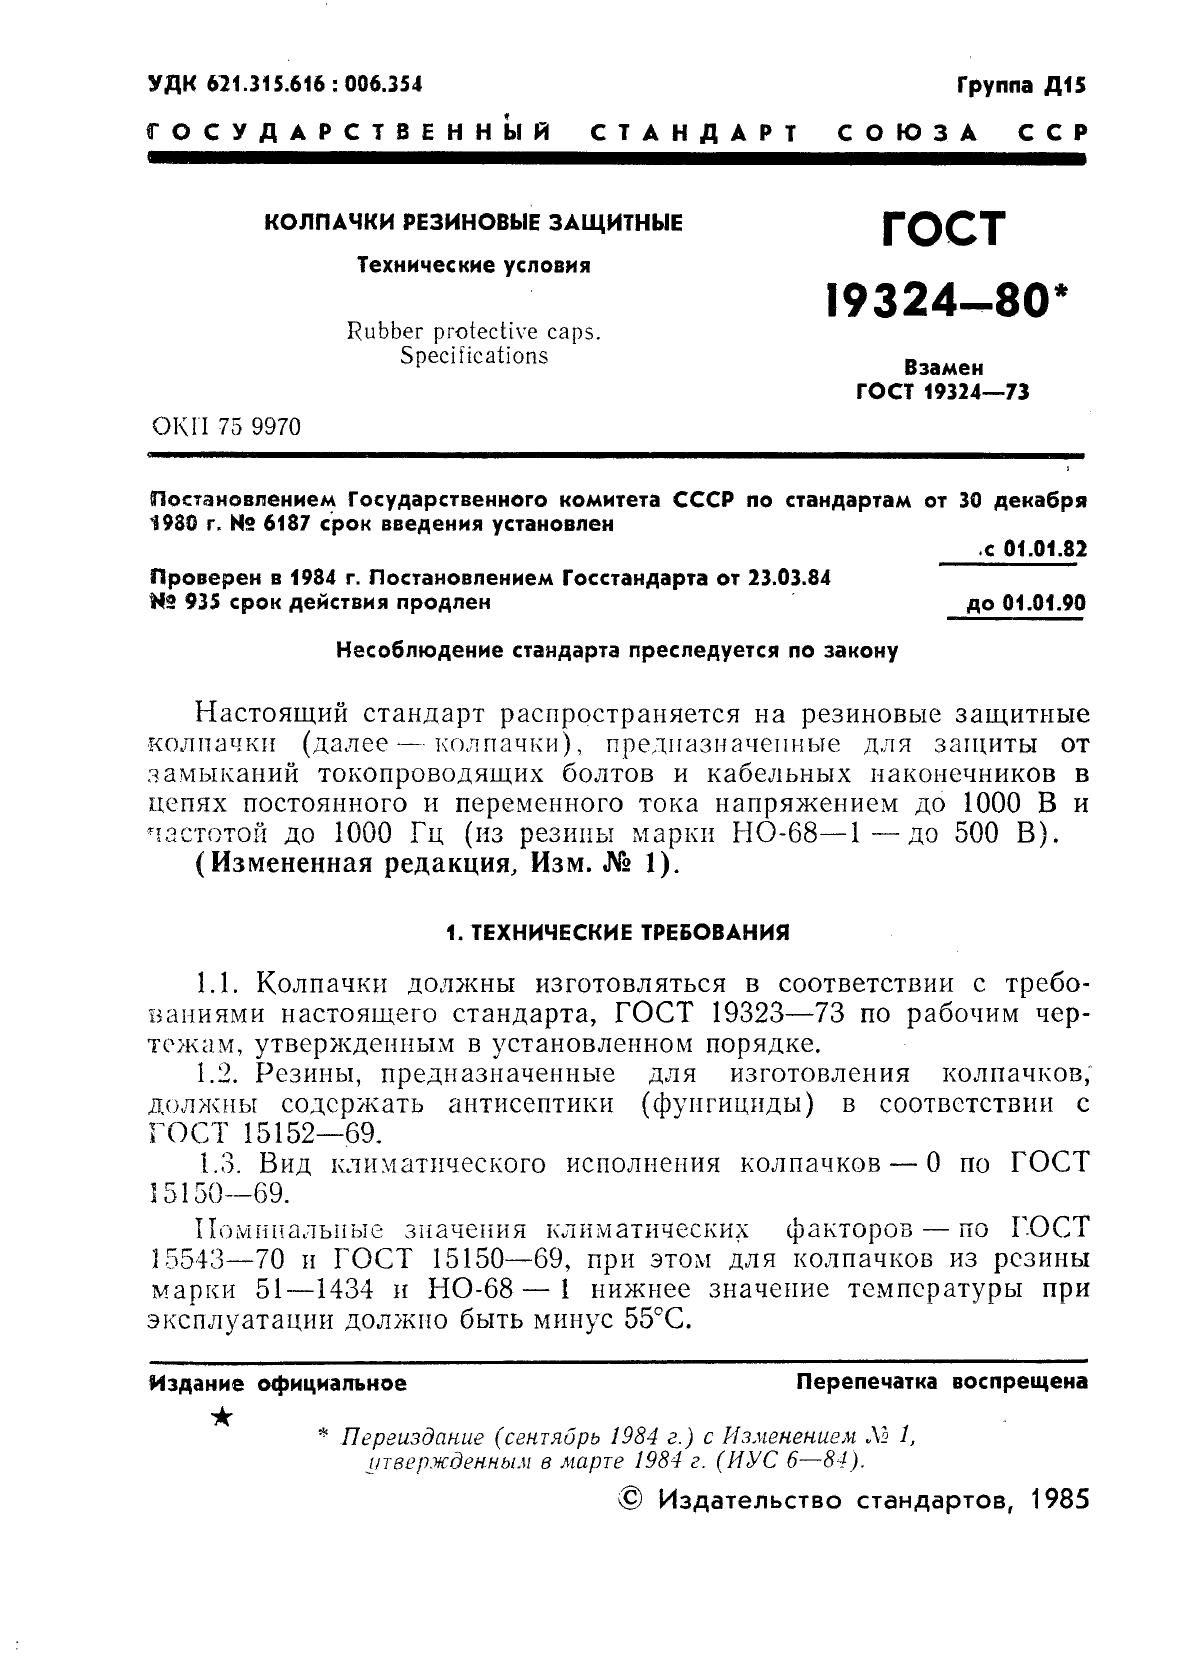 ГОСТ 19324-80 Колпачки резиновые защитные. Технические условия (фото 2 из 9)